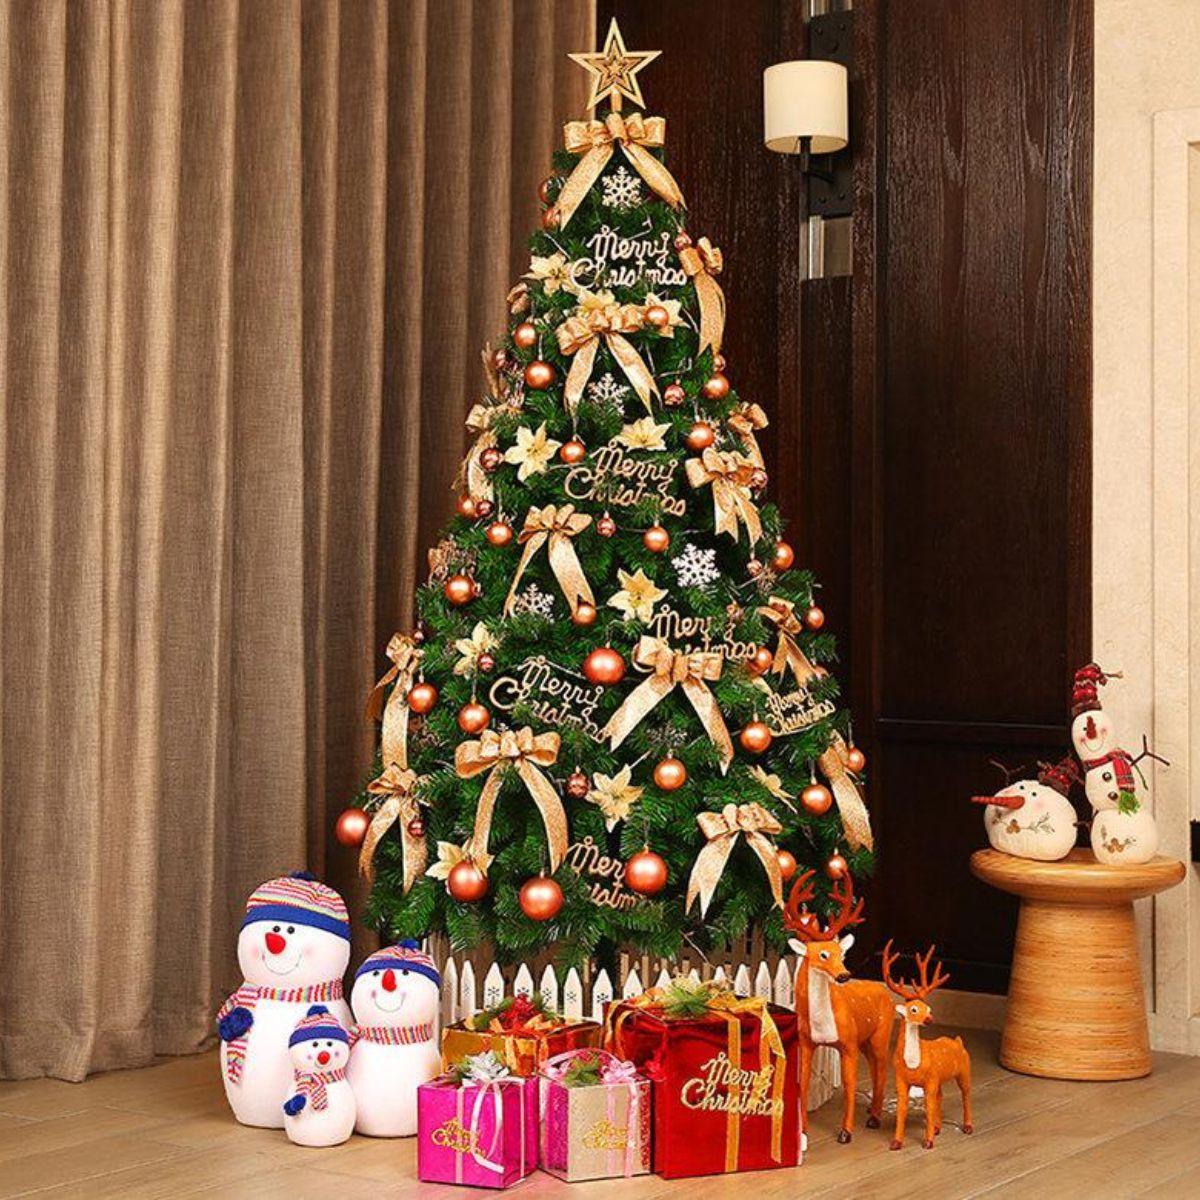 Trang trí cây thông Noel bằng các hộp quà